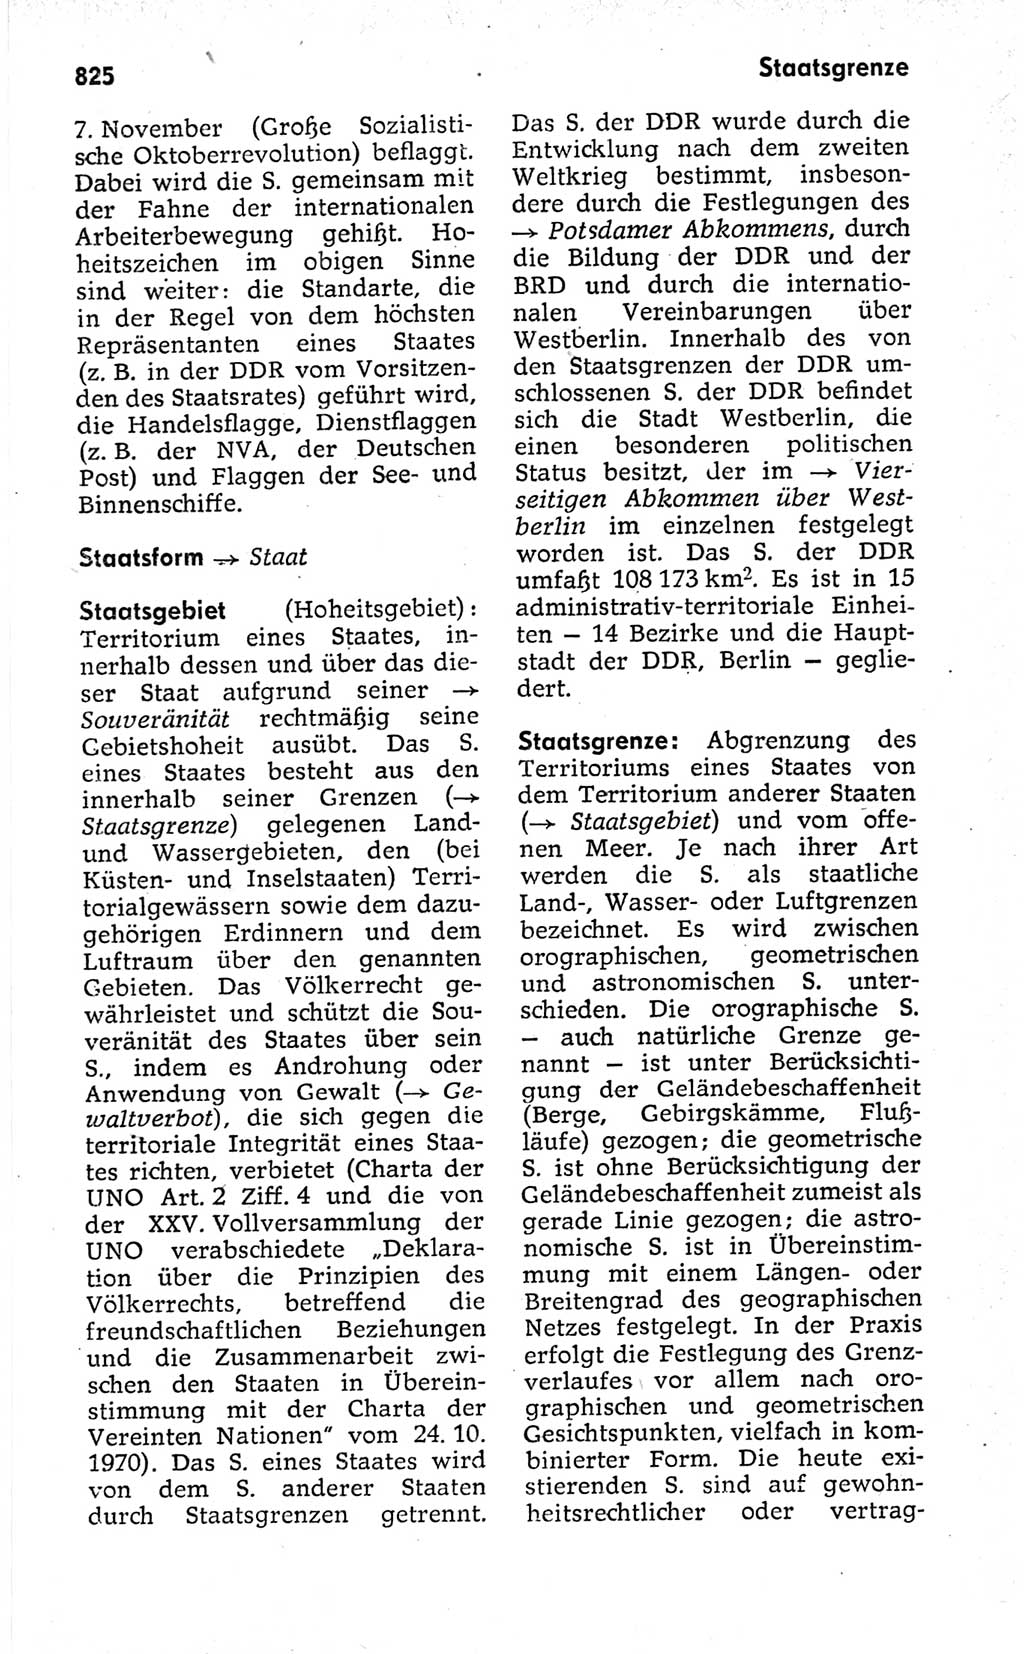 Kleines politisches Wörterbuch [Deutsche Demokratische Republik (DDR)] 1973, Seite 825 (Kl. pol. Wb. DDR 1973, S. 825)